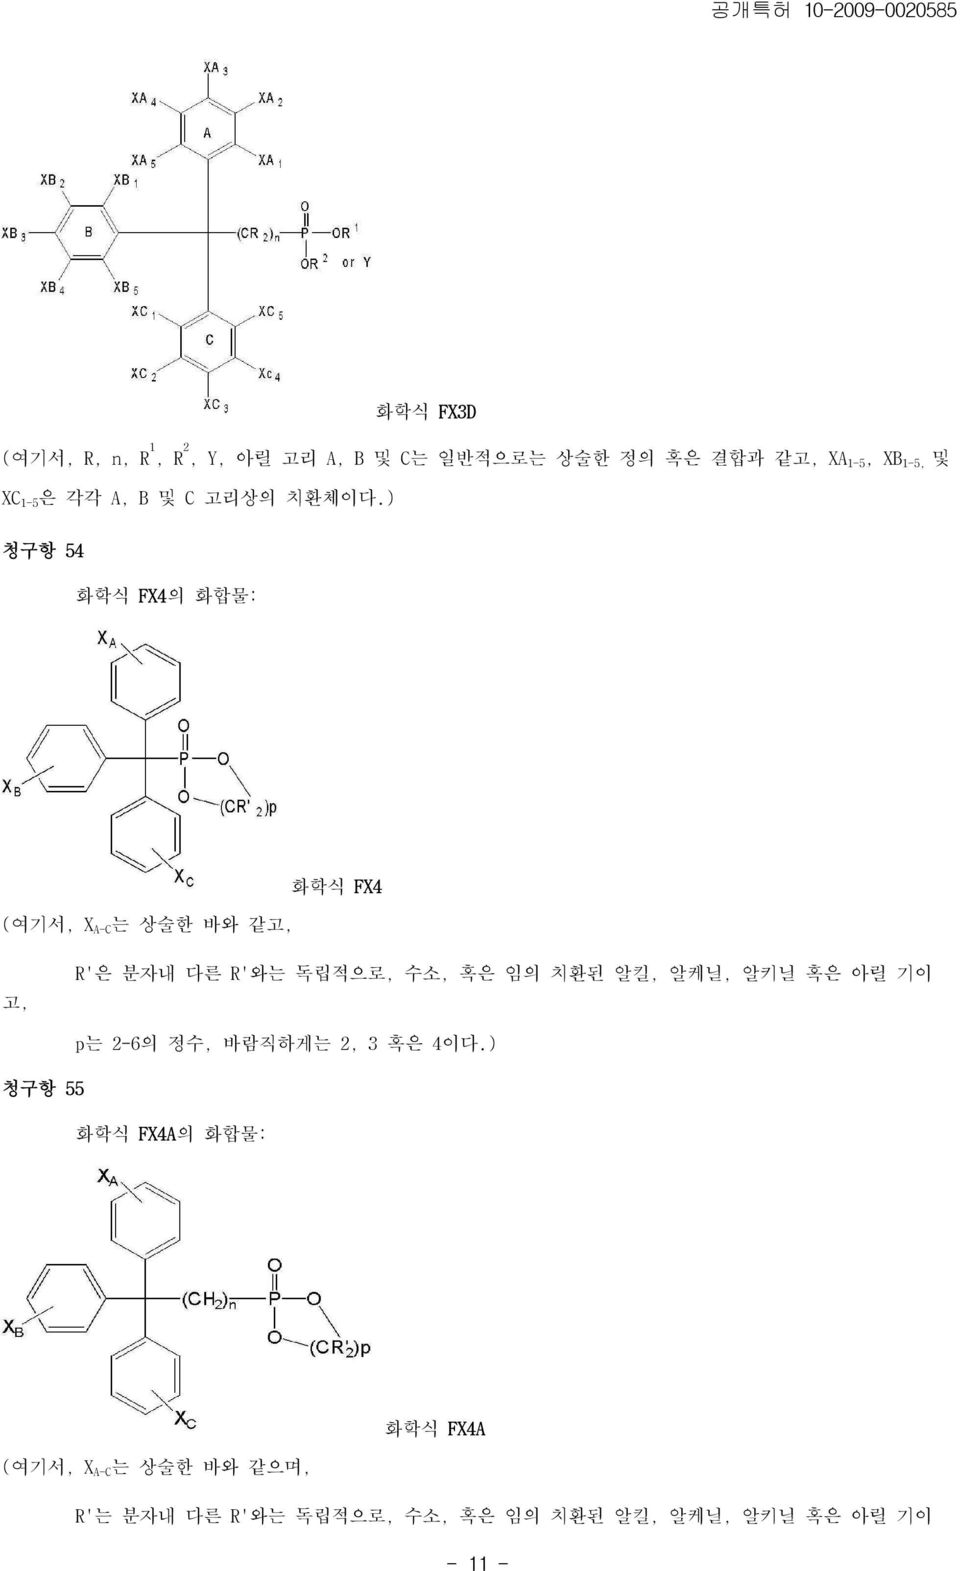 ) 청구항 54 화학식 FX4의 화합물: (여기서, X A-C 는 상술한 바와 같고, 화학식 FX4 고, R'은 분자내 다른 R'와는 독립적으로, 수소, 혹은 임의 치환된 알킬,